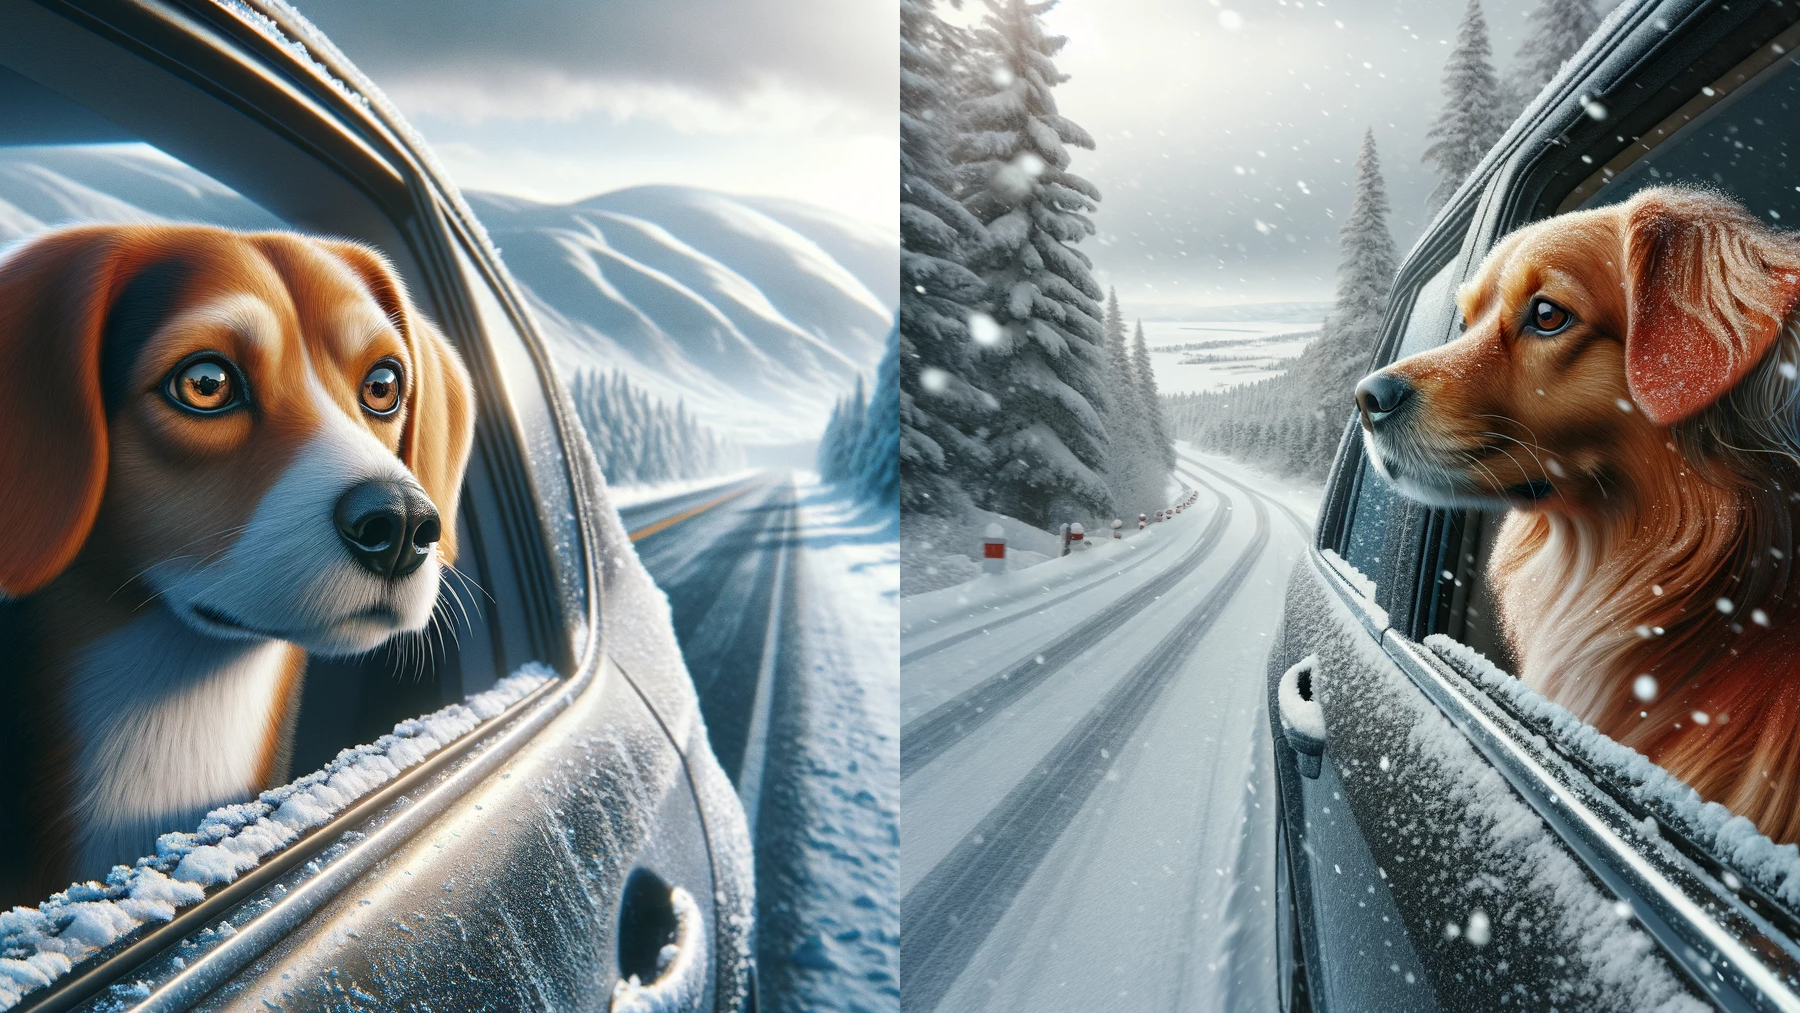 Zwei Bilder von Hunden, die aus einem Autofenster in eine Schneelandschaft schauen - beide haben eine unrealistische, gemalte und übertriebene Qualität